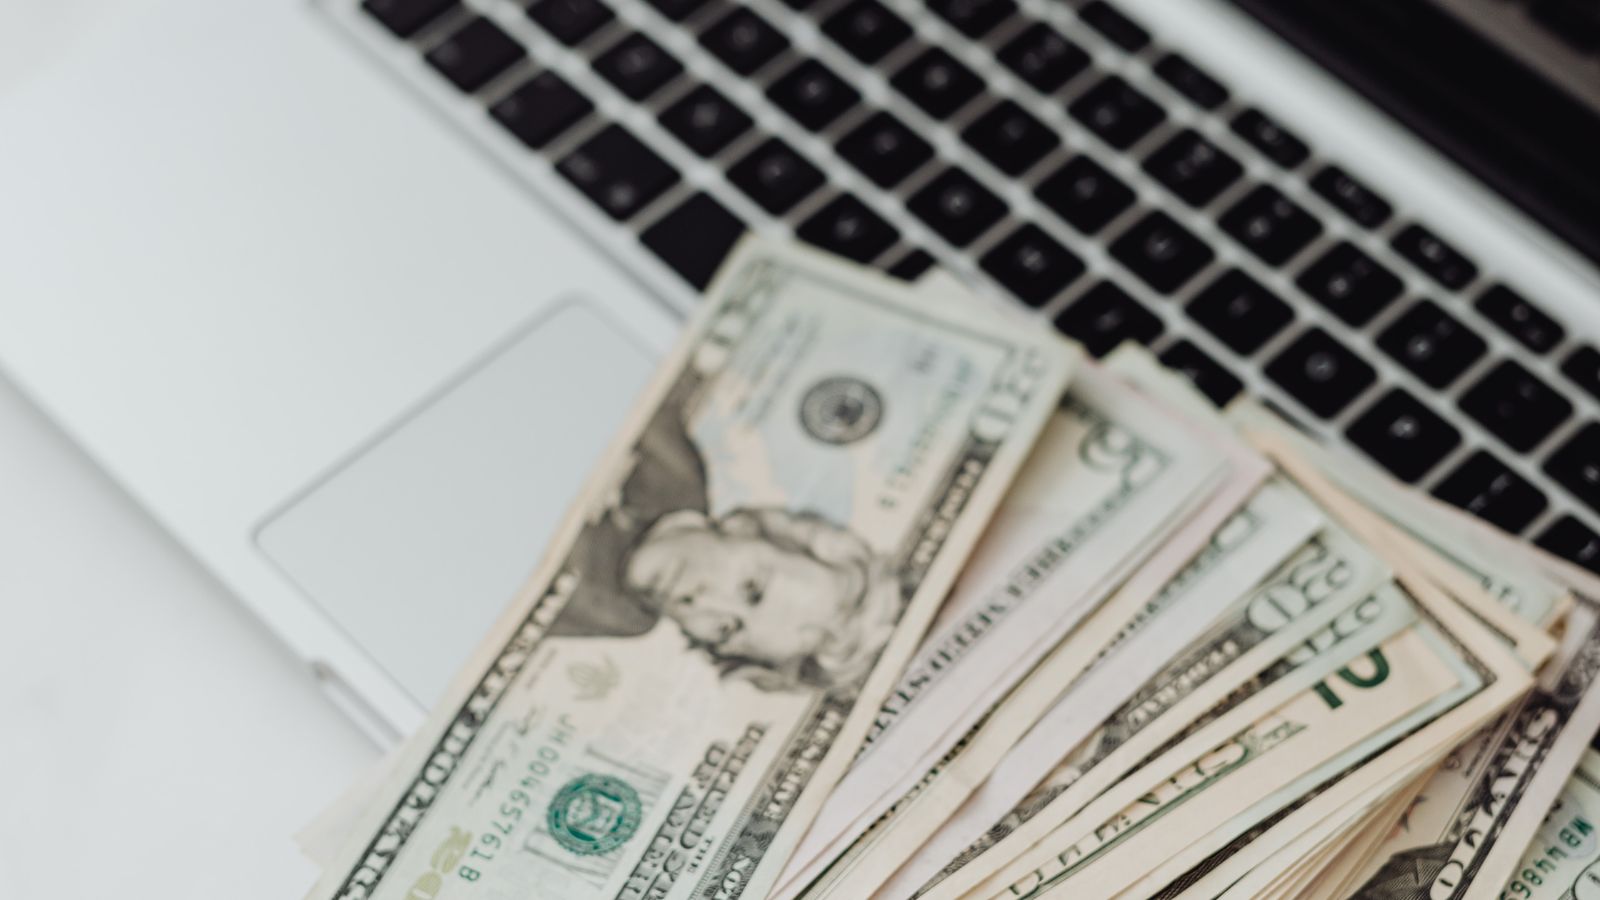 Maximizing Profits: The Best Blogging Platform to Make Money